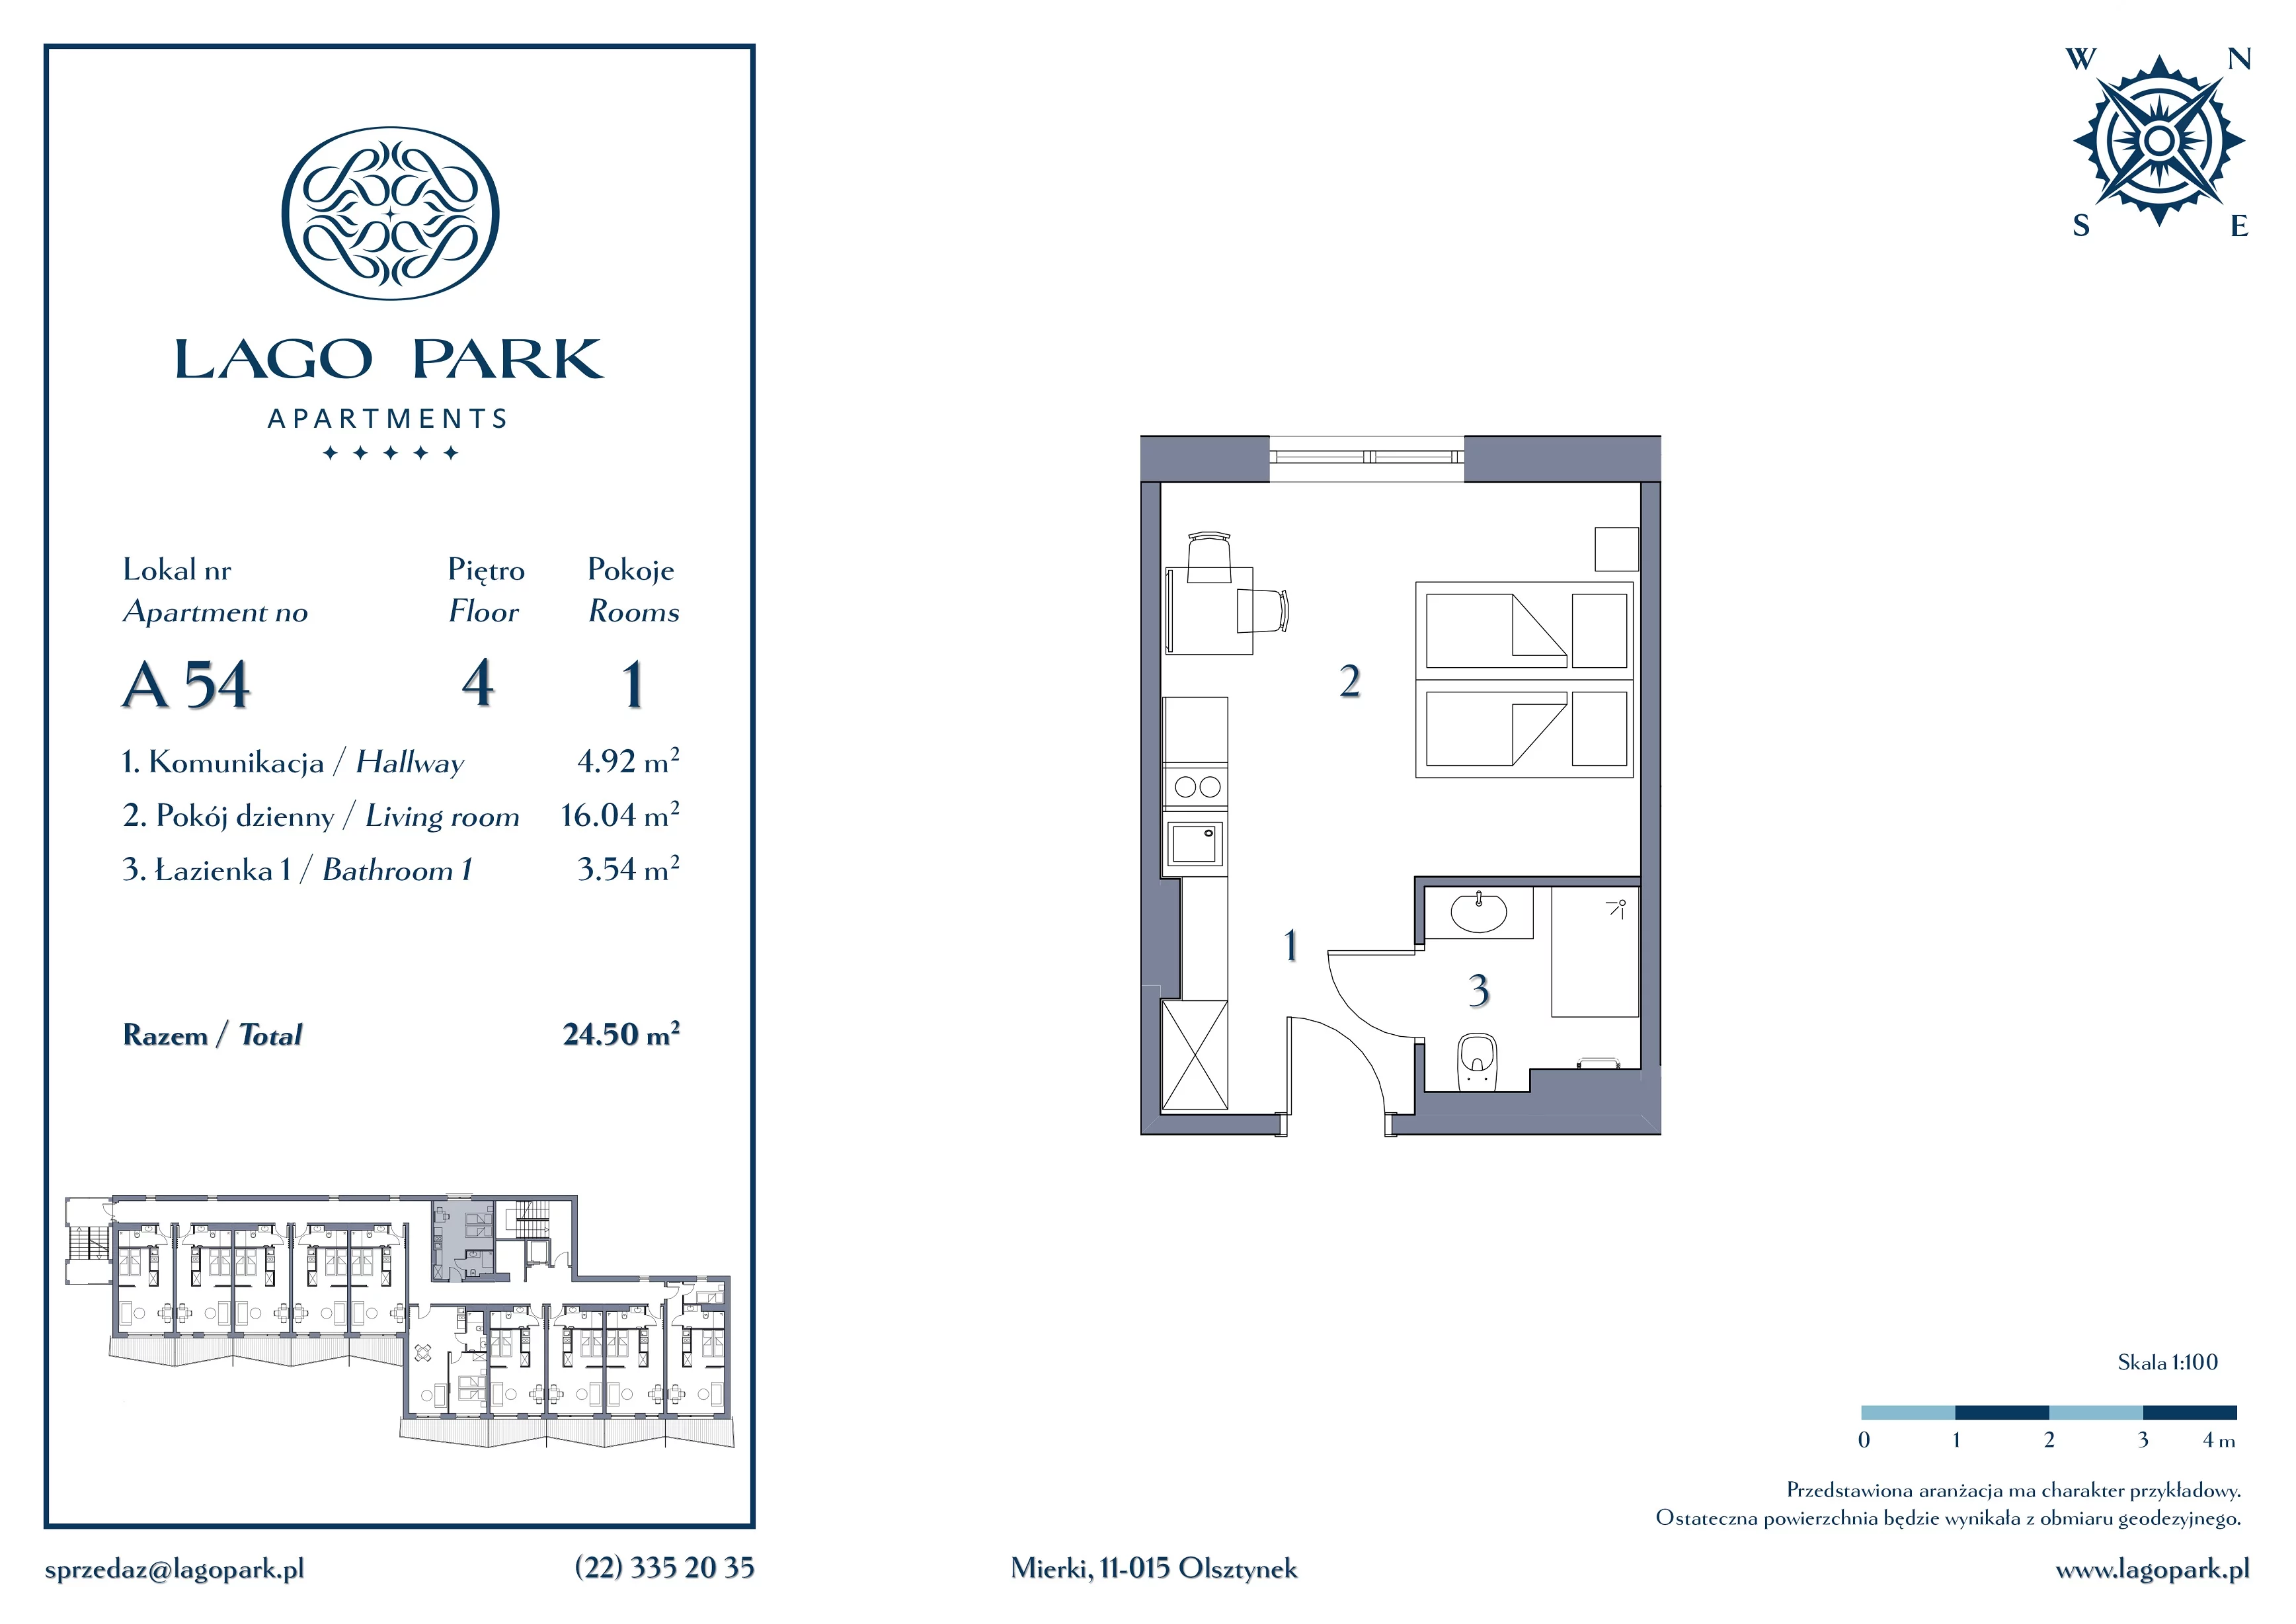 Apartament inwestycyjny 24,50 m², piętro 4, oferta nr A54, Lago Park Apartments by Aries, Mierki, Kołatek 2